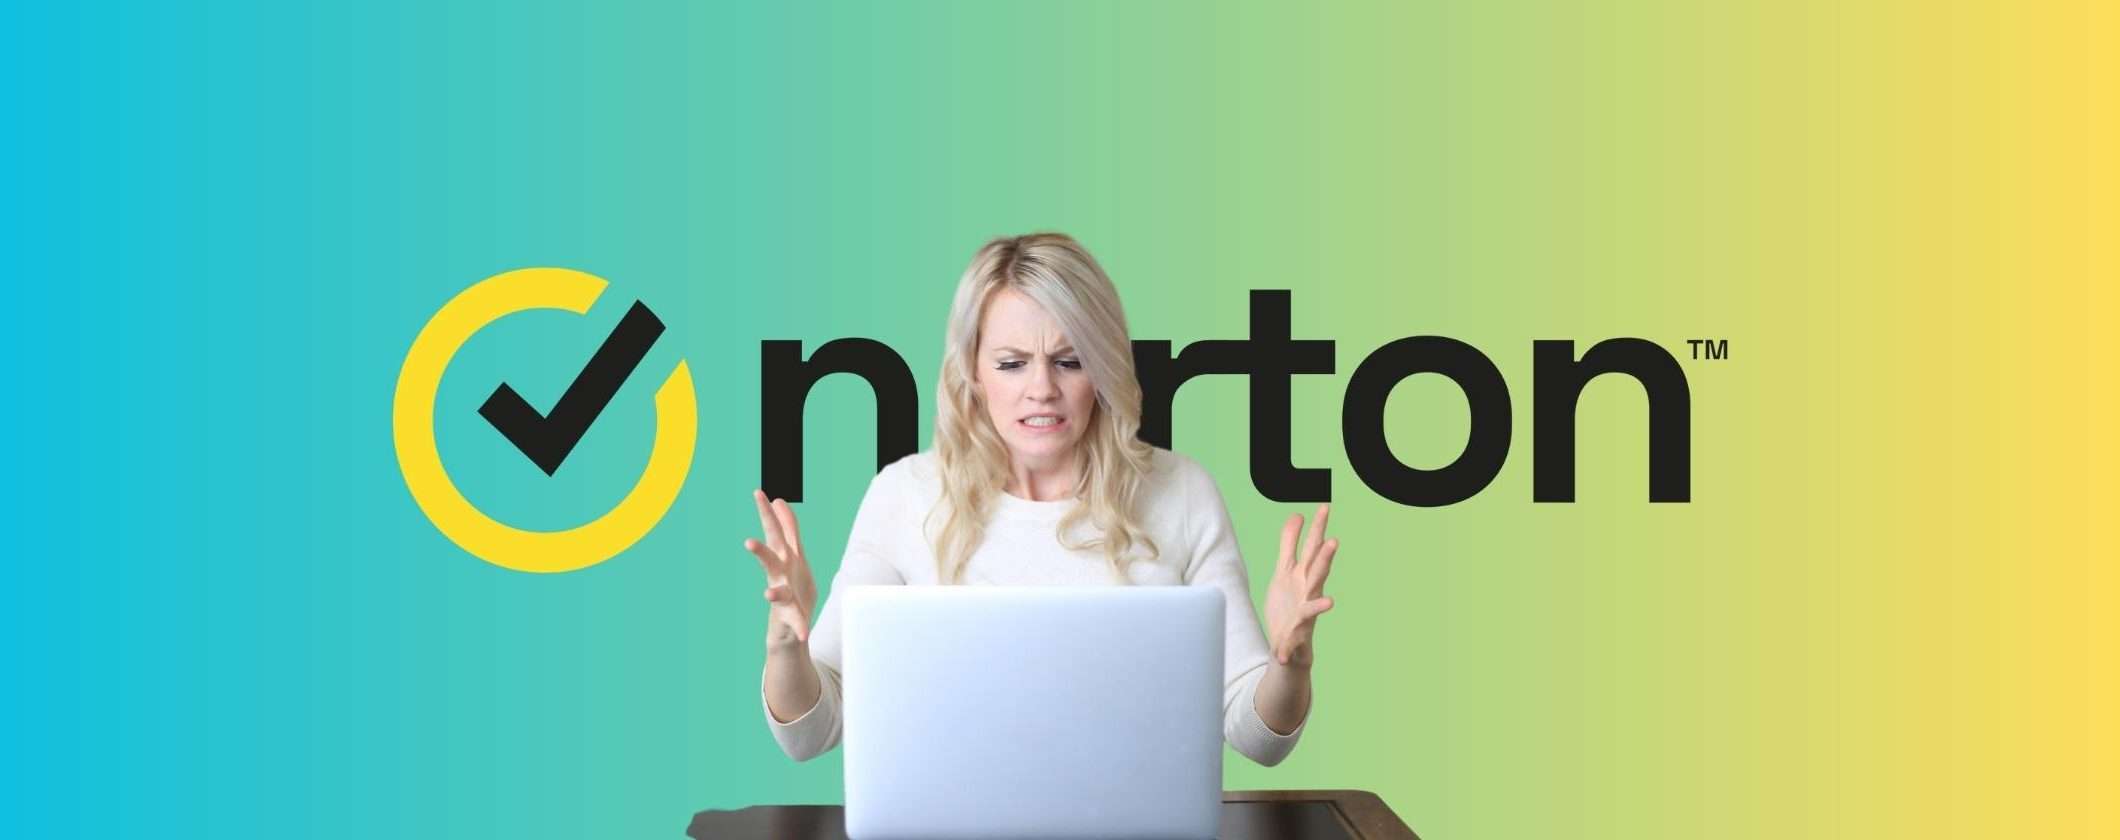 Norton 360 Premium: l'antivirus completo a meno di 4€ al mese